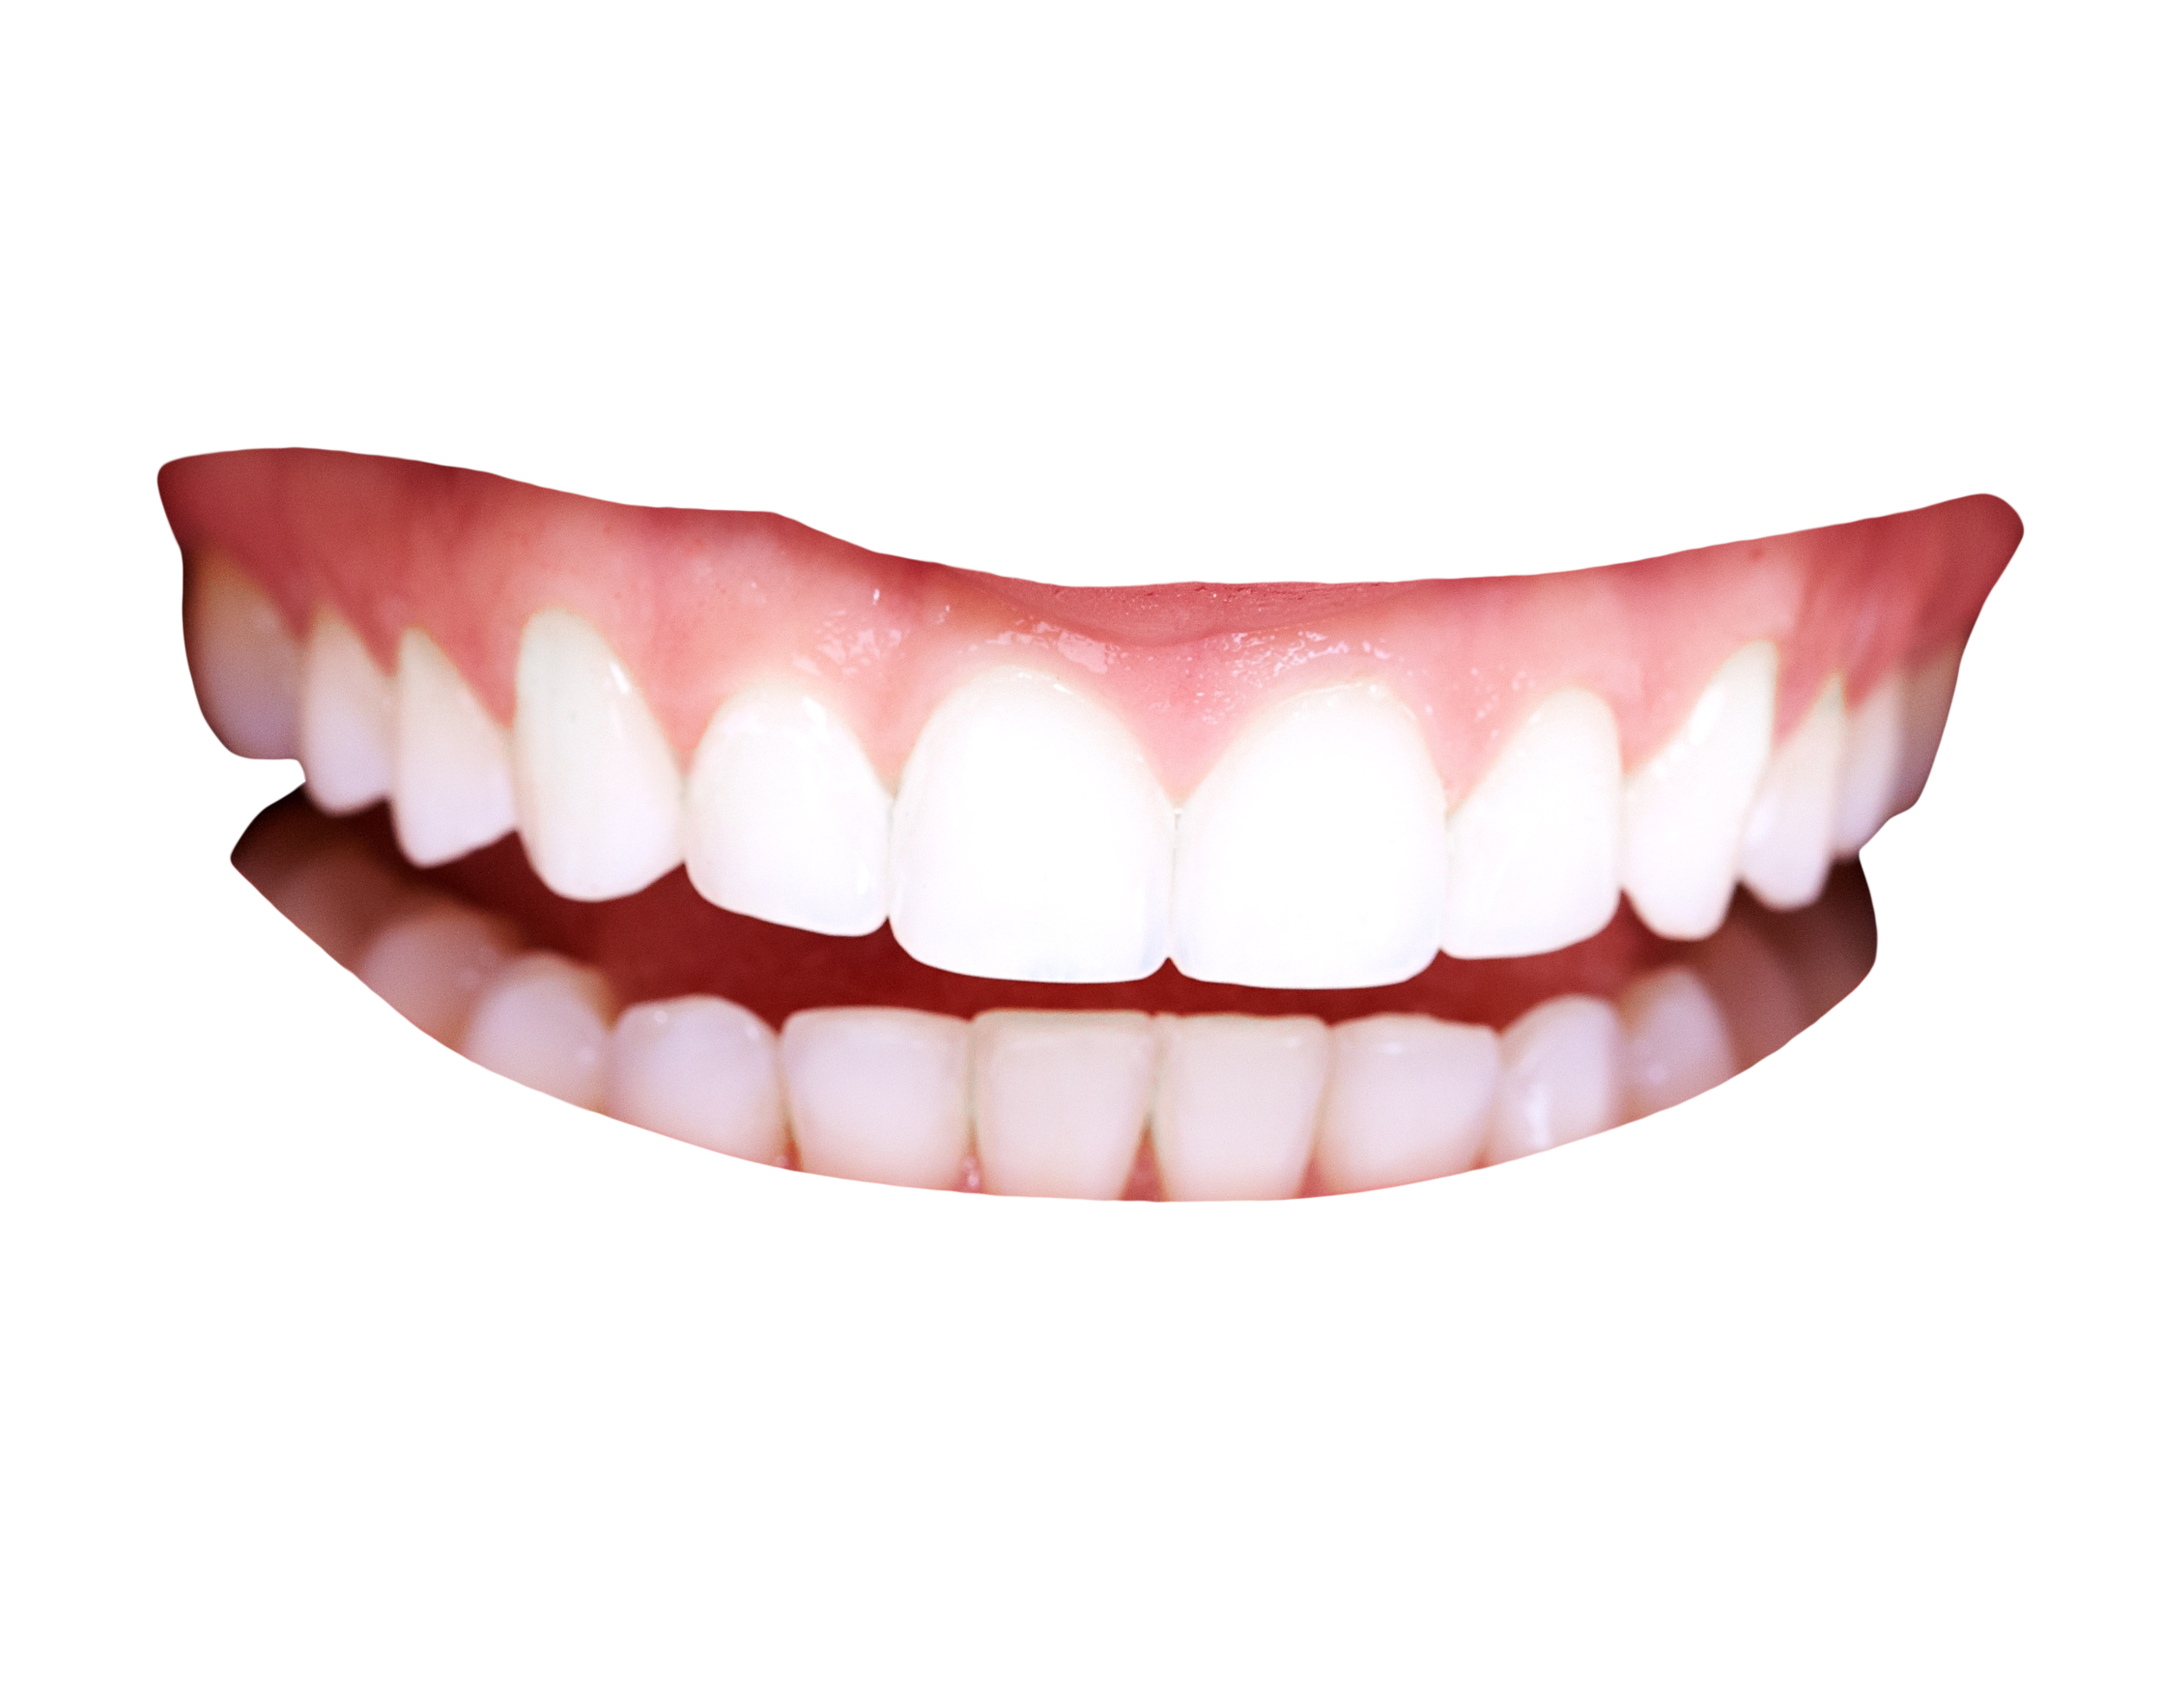 Dente sorriso PNG imagem de alta qualidade